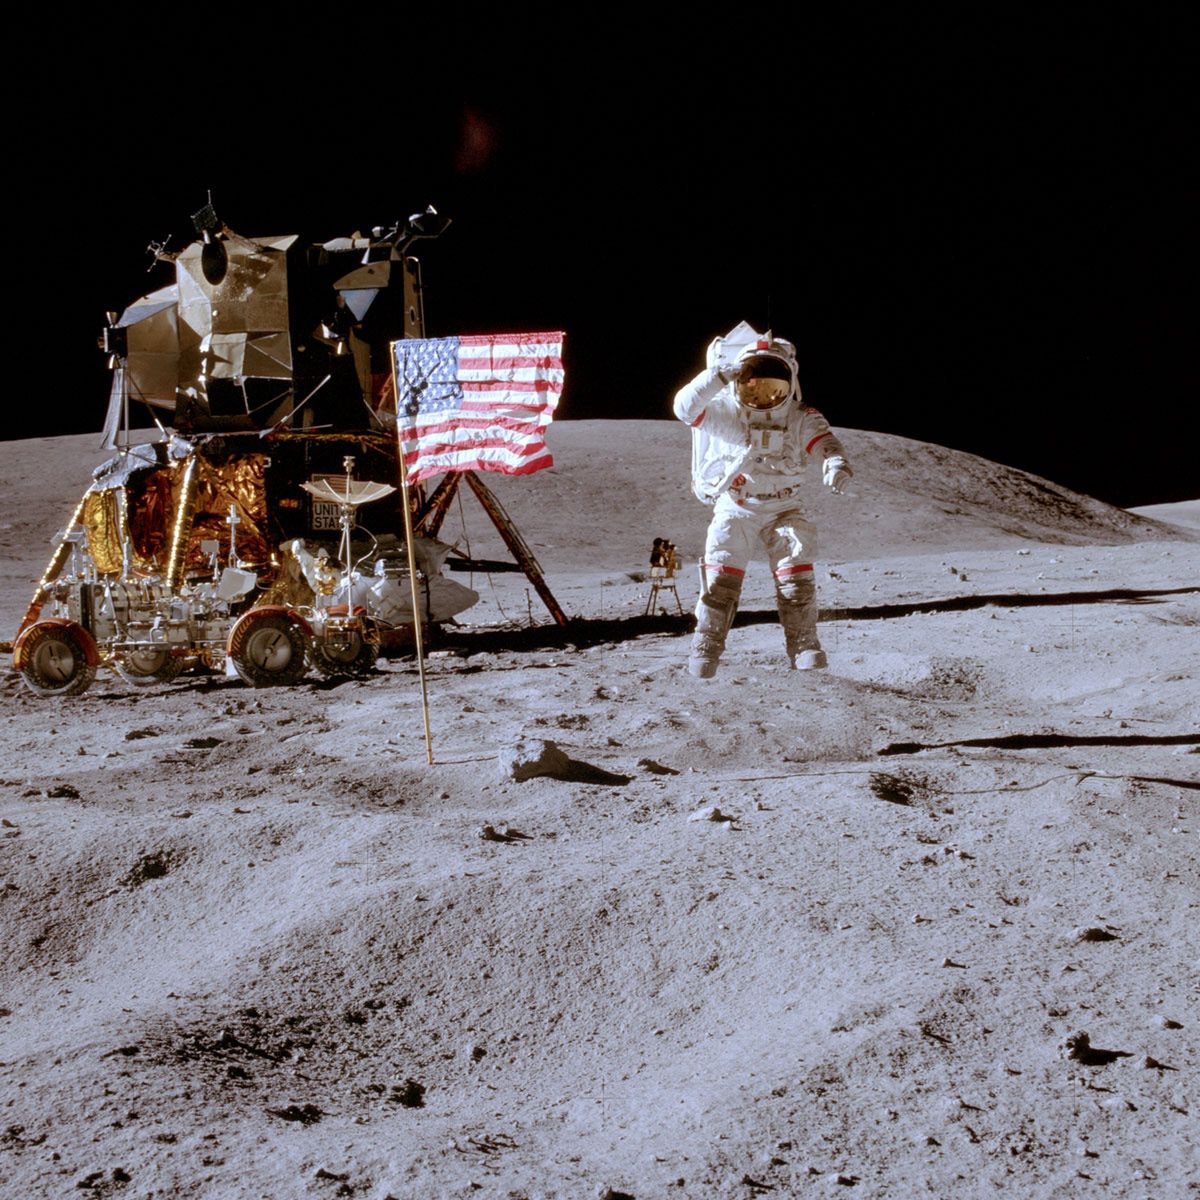 Gdyby nie było obok nas Księżyca, bylibyśmy pozbawieni szansy eksploracji kosmicznego sąsiedztwa. Misja Apollo 16